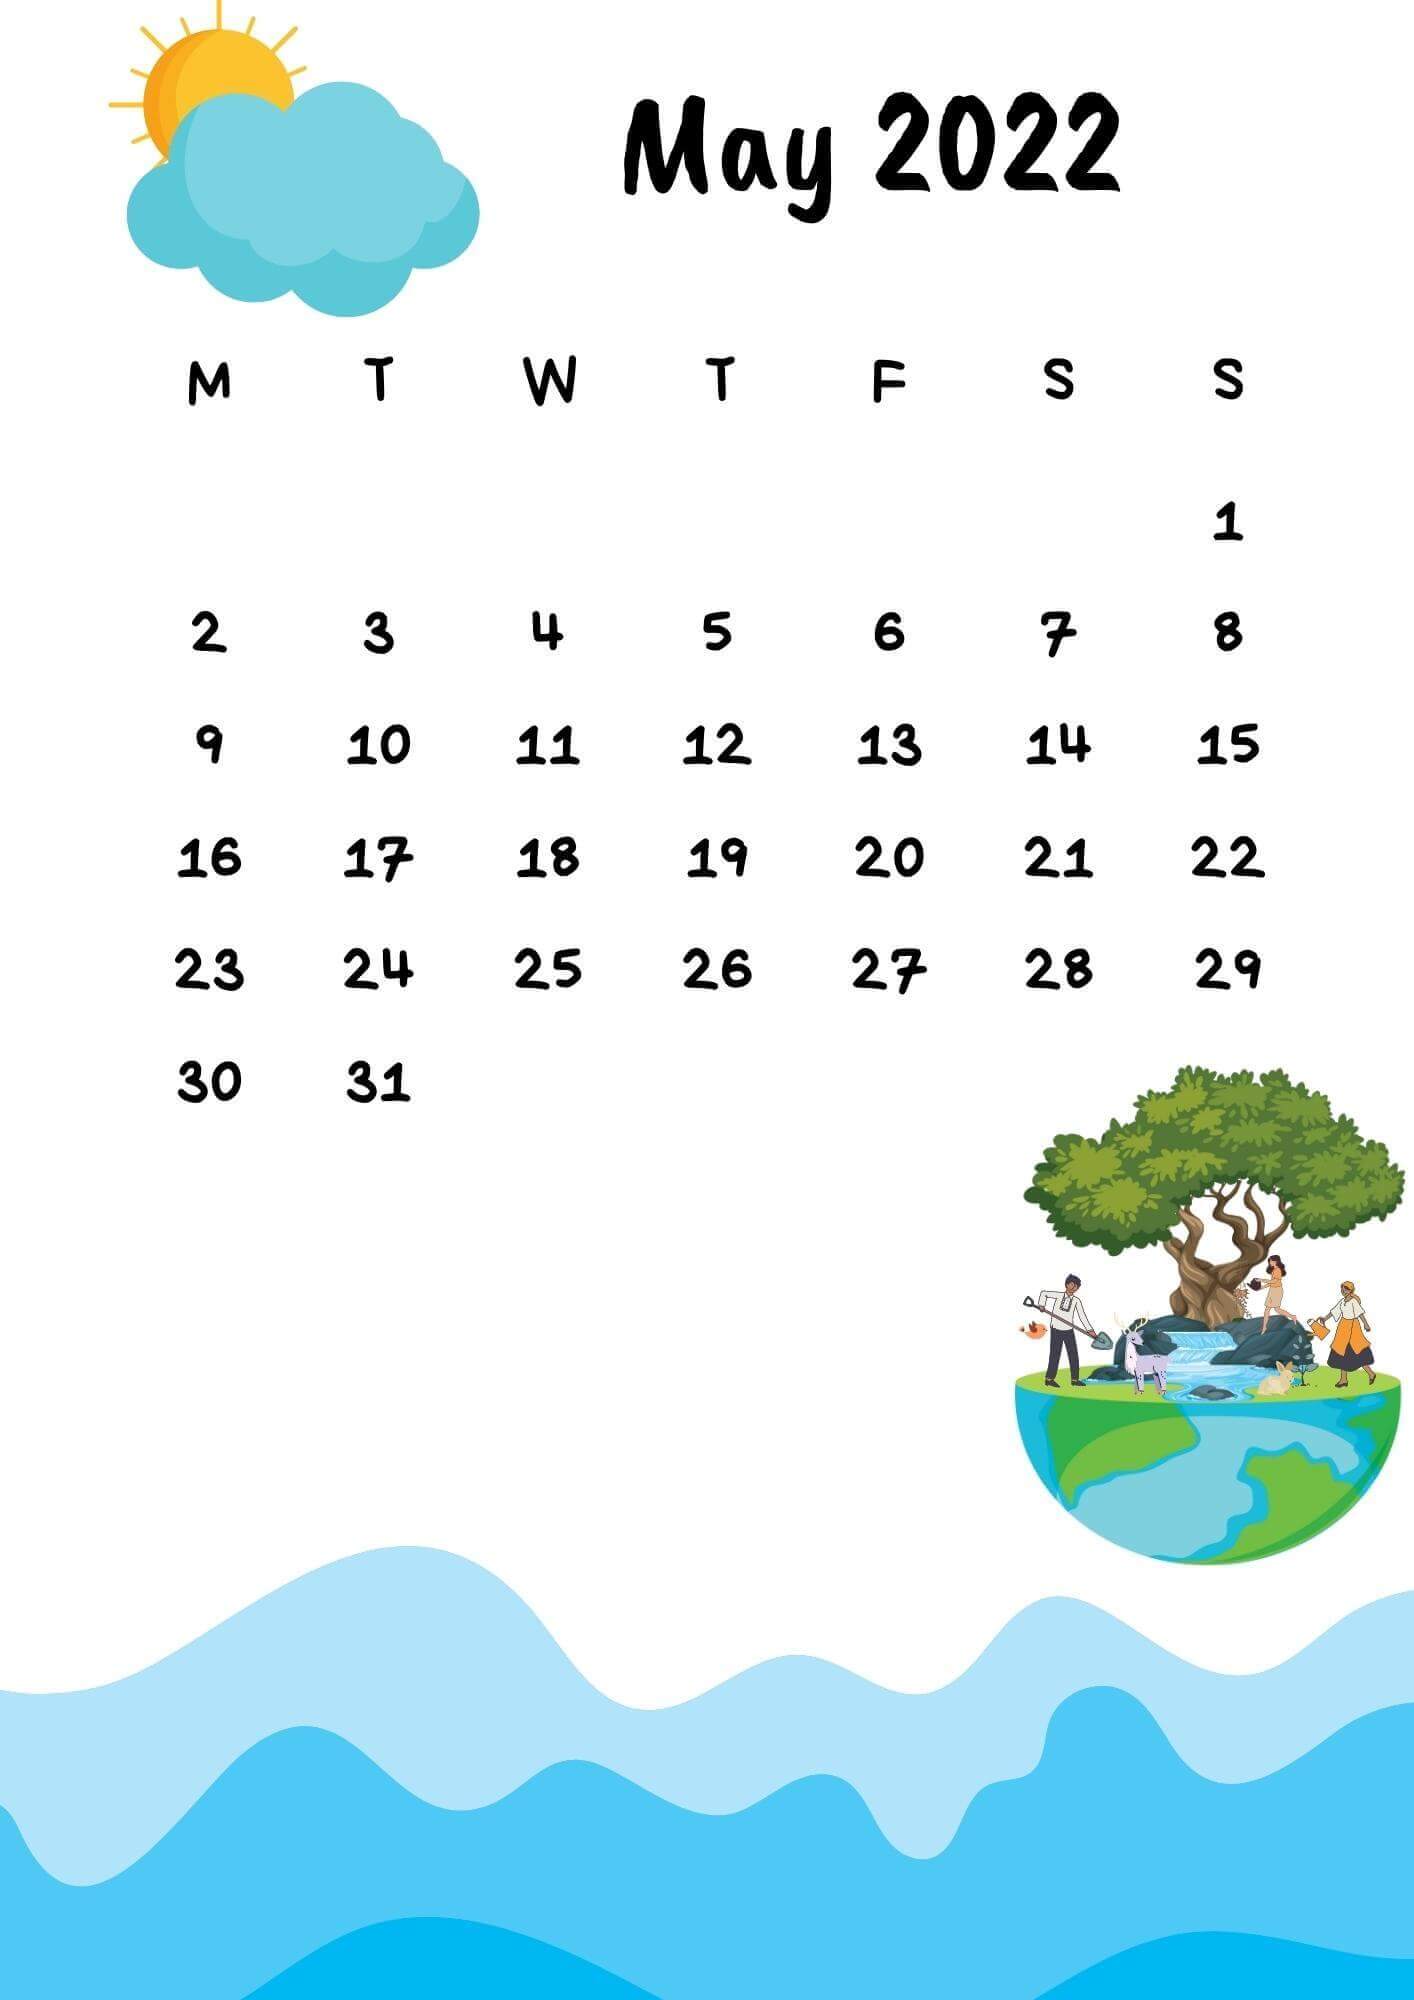 May 2022 Calendar Wallpaper for Phone